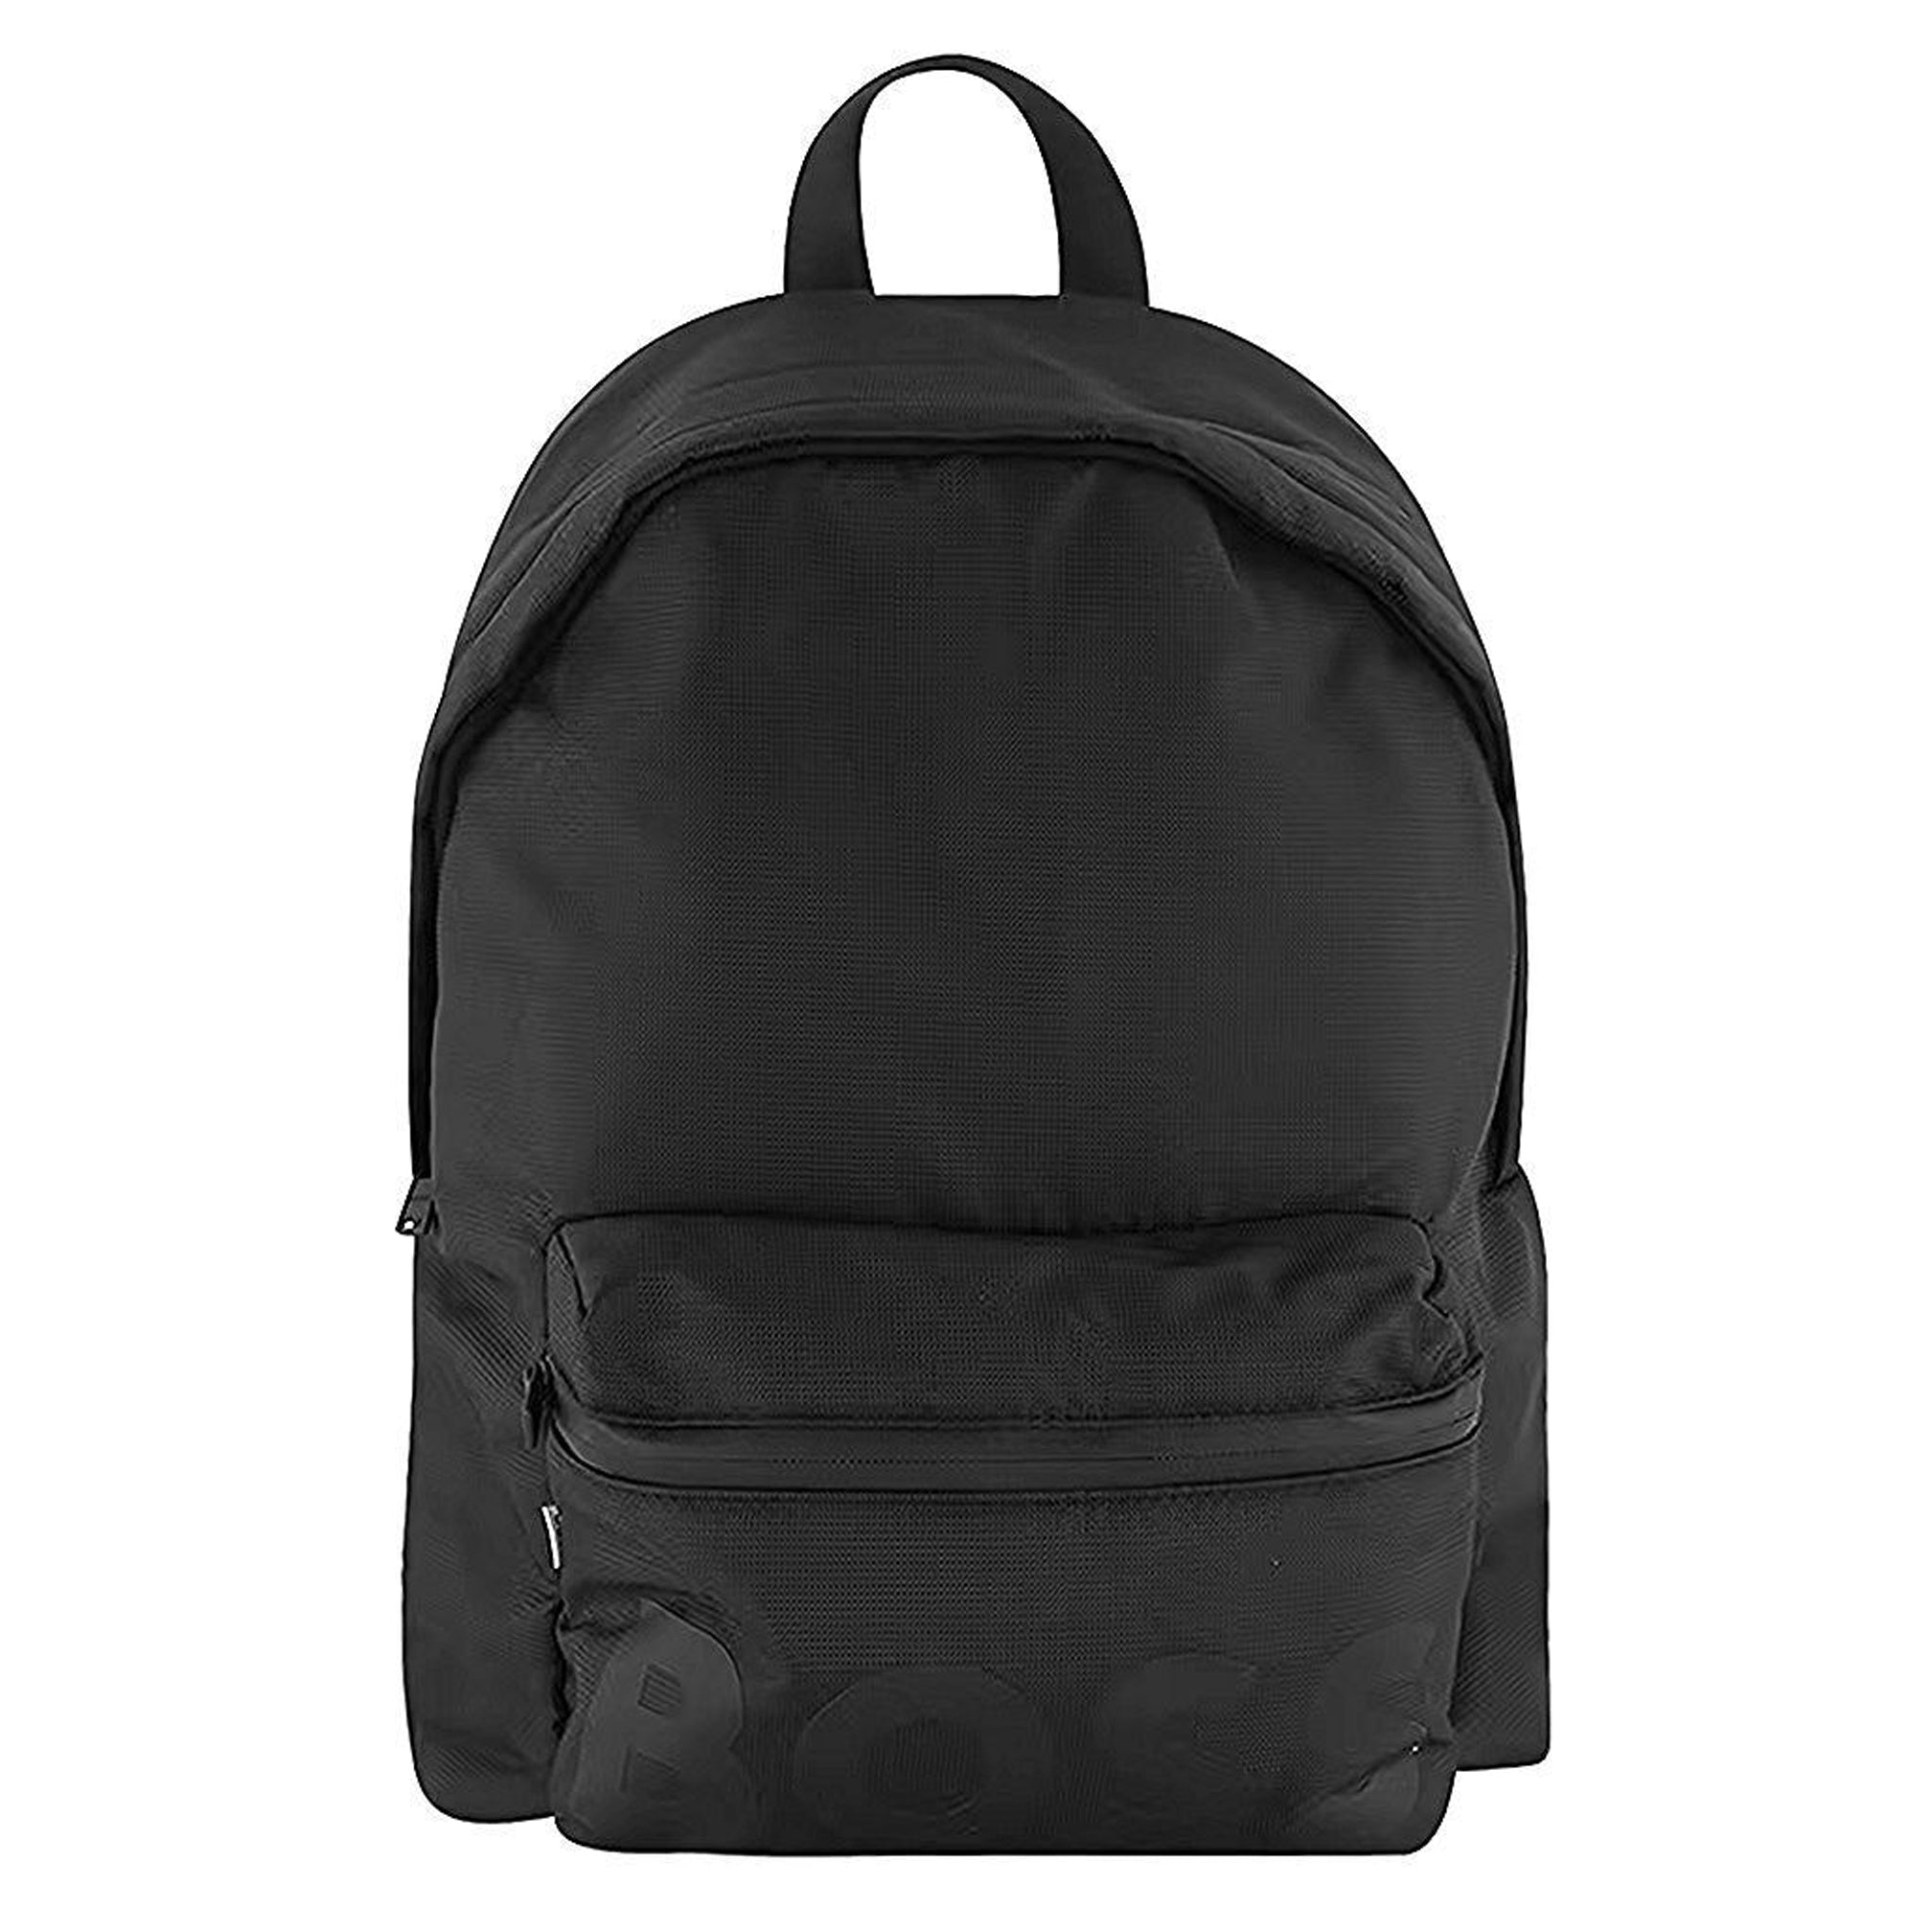 Hugo Boss Black Backpack